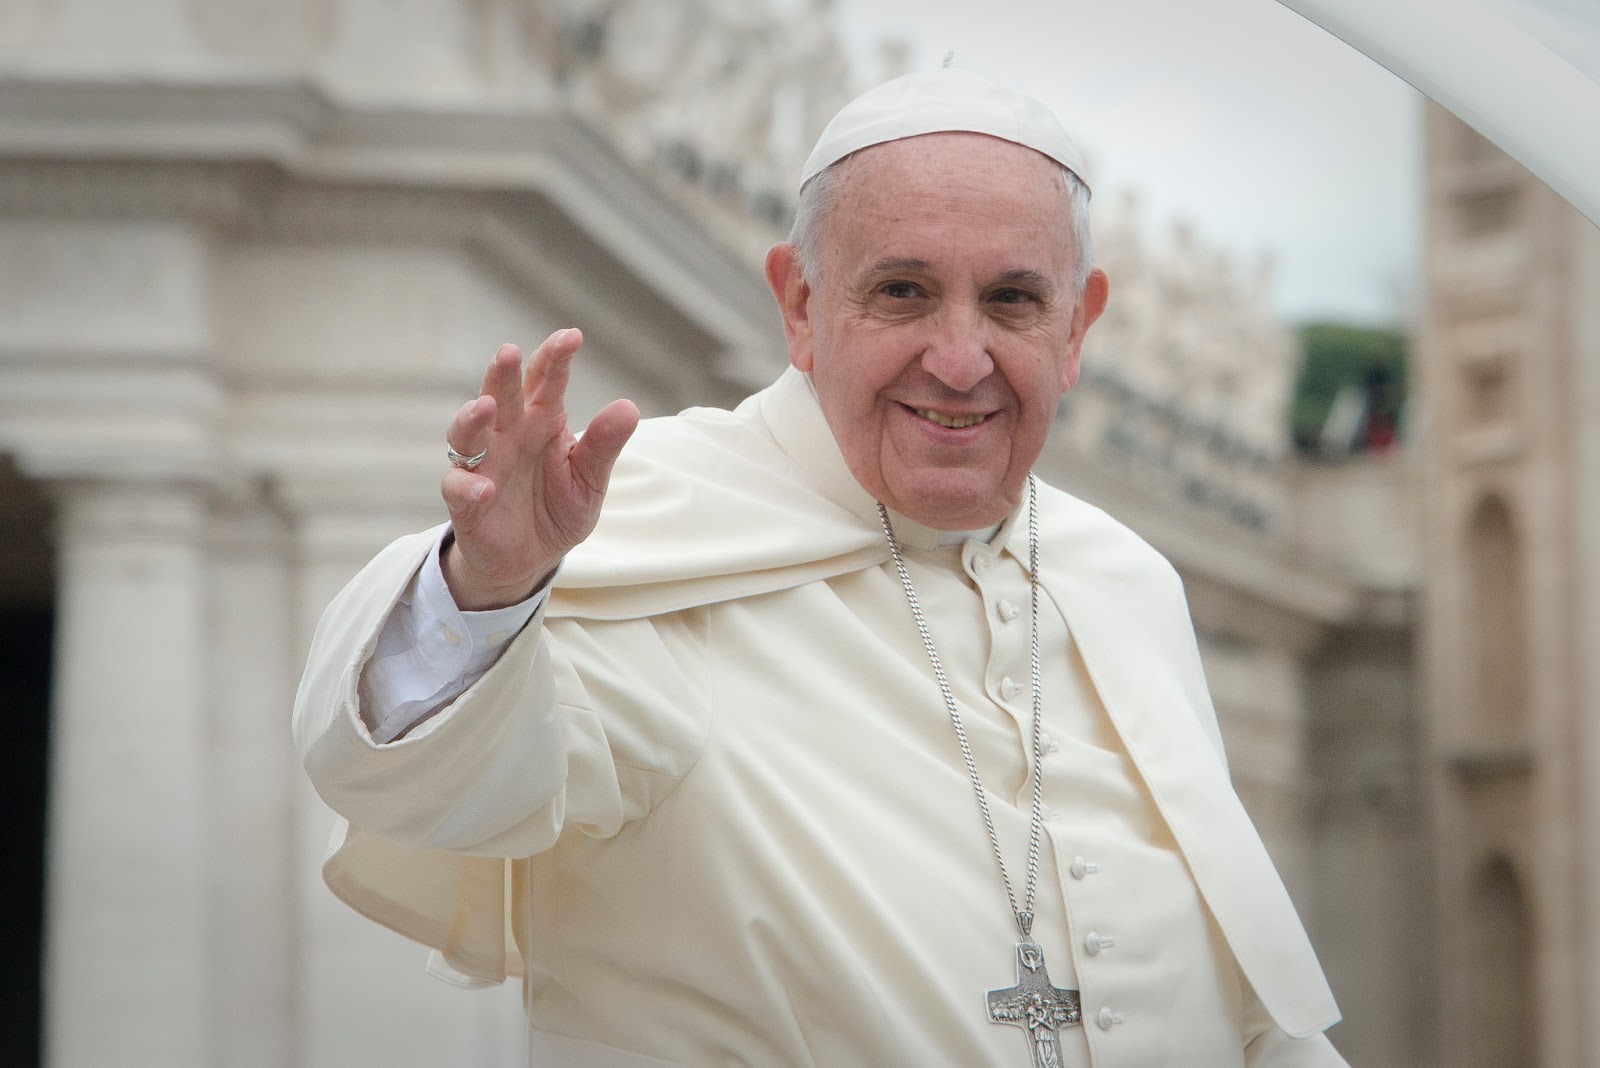 Mensagem do Papa Francisco para quem está desesperançado e triste